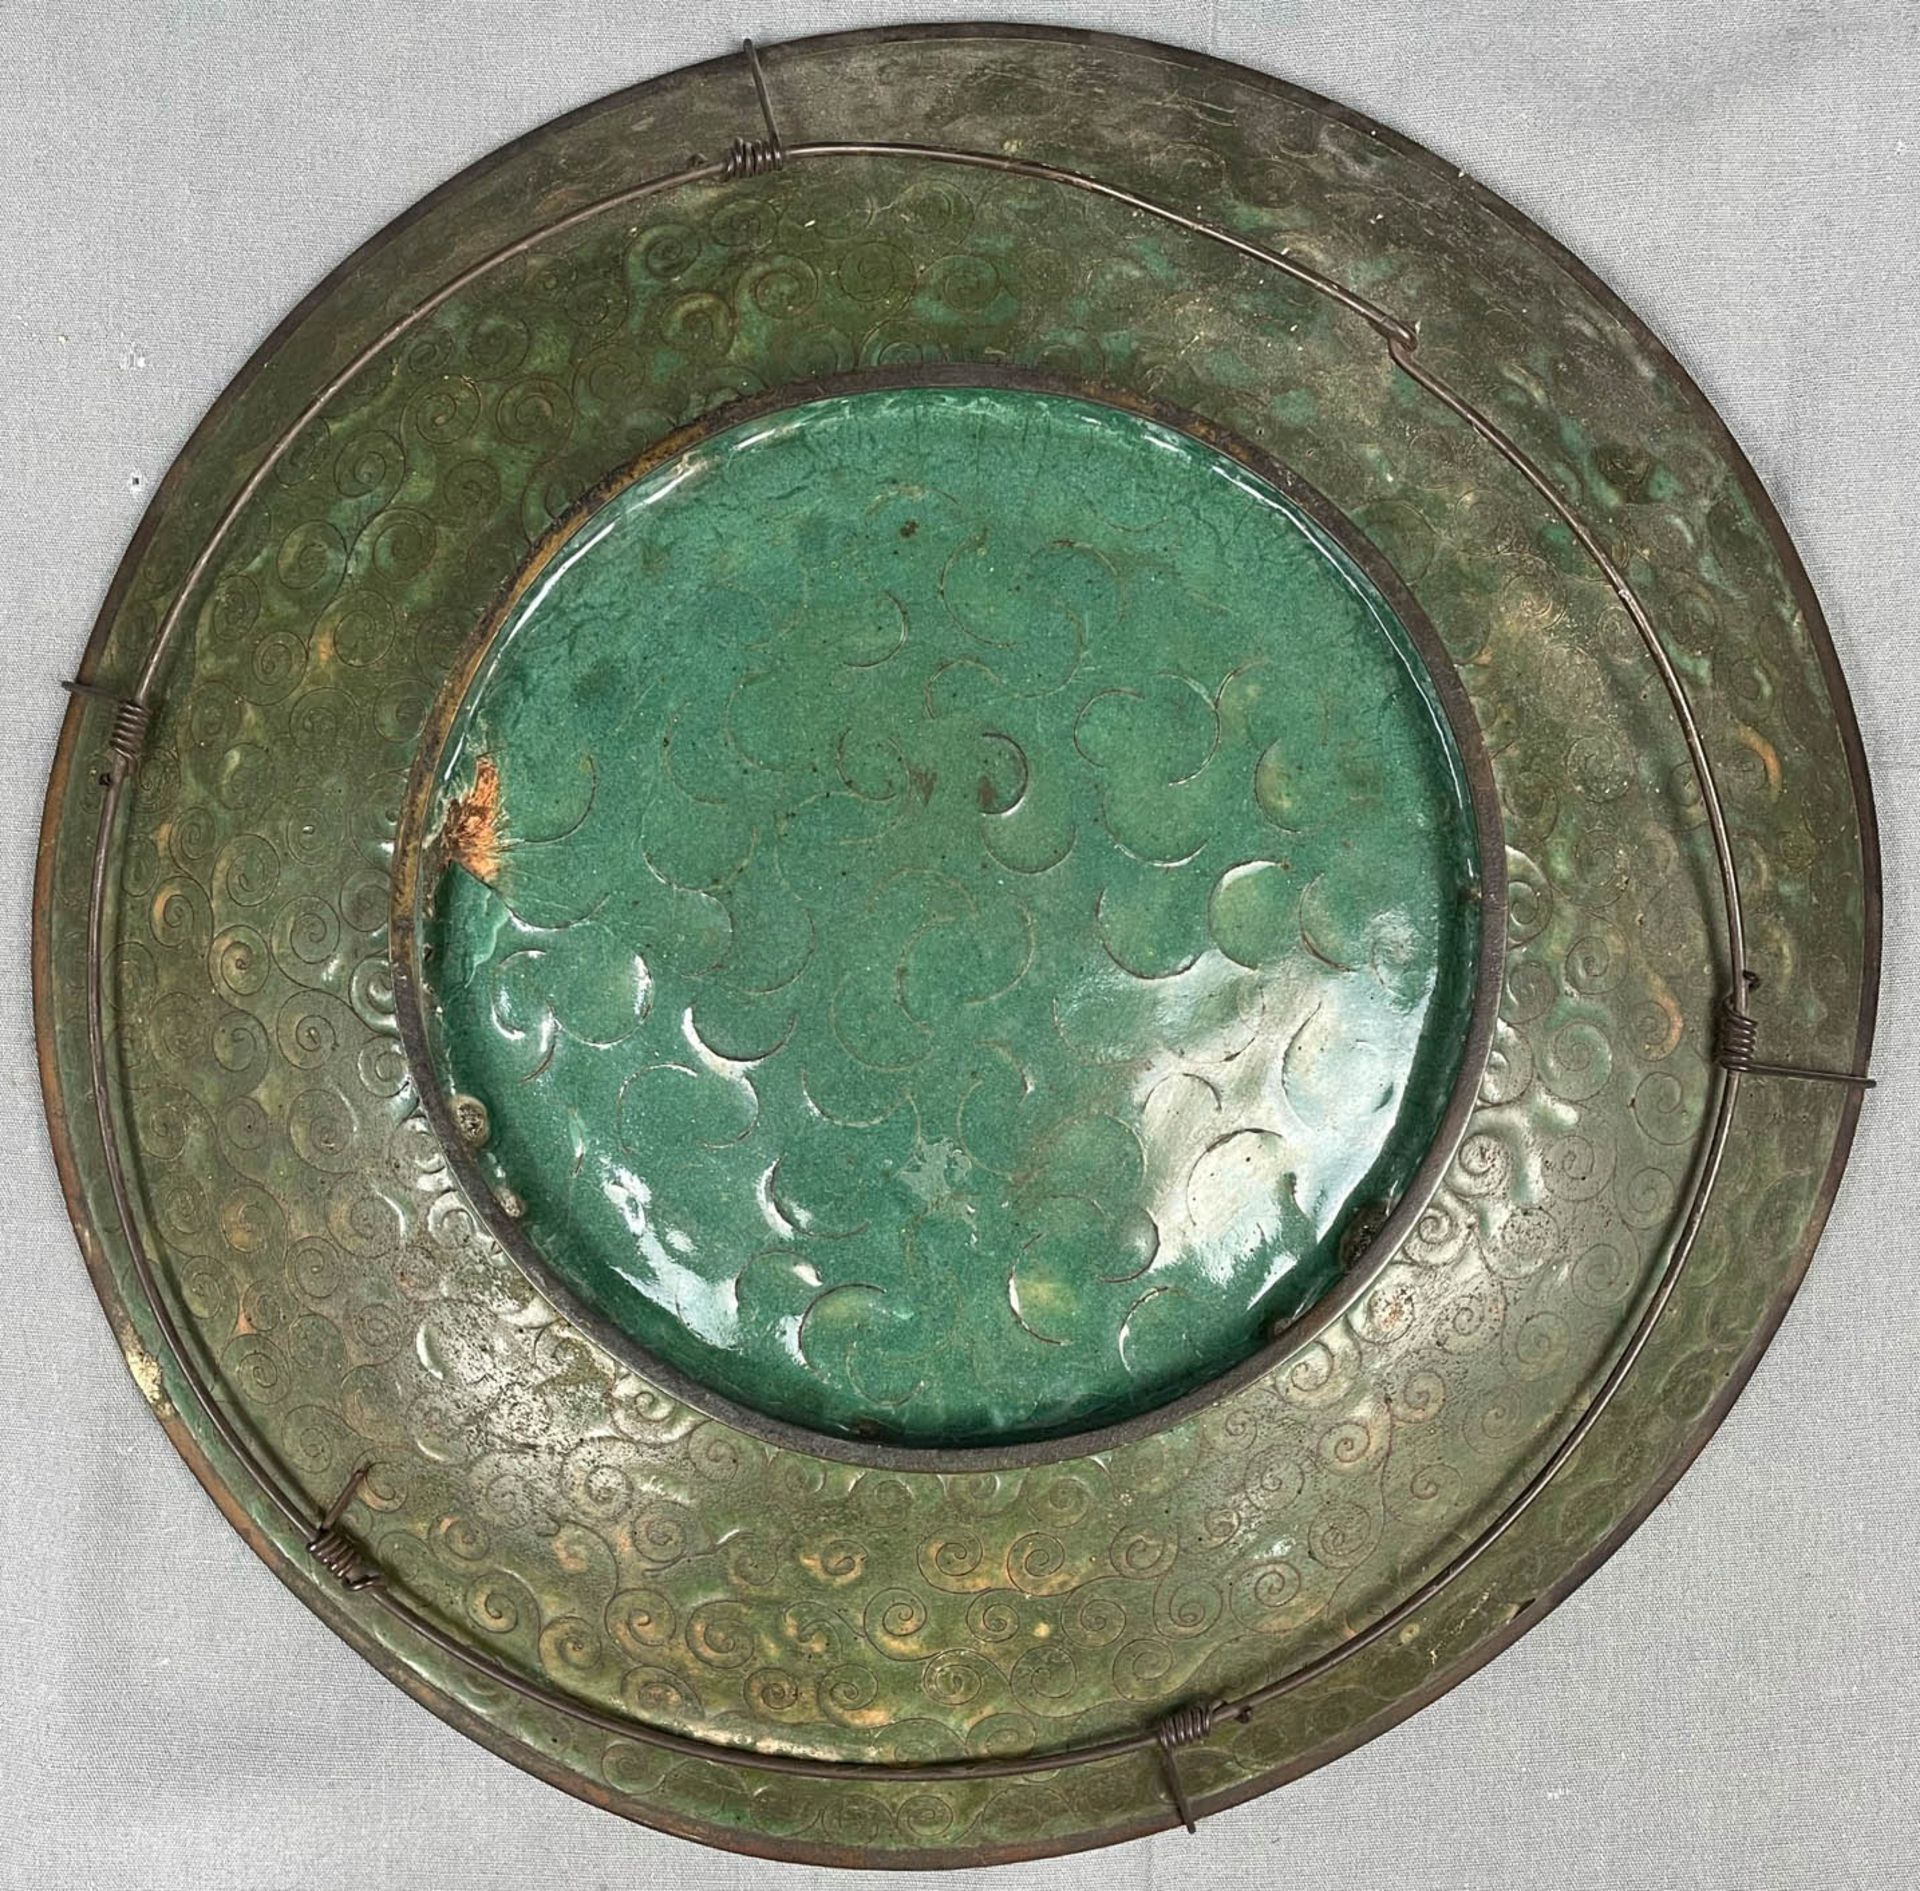 3 Cloisonné Platten. Wohl Japan, China alt. Bis 36,5 cm Durchmesser. - Image 21 of 22